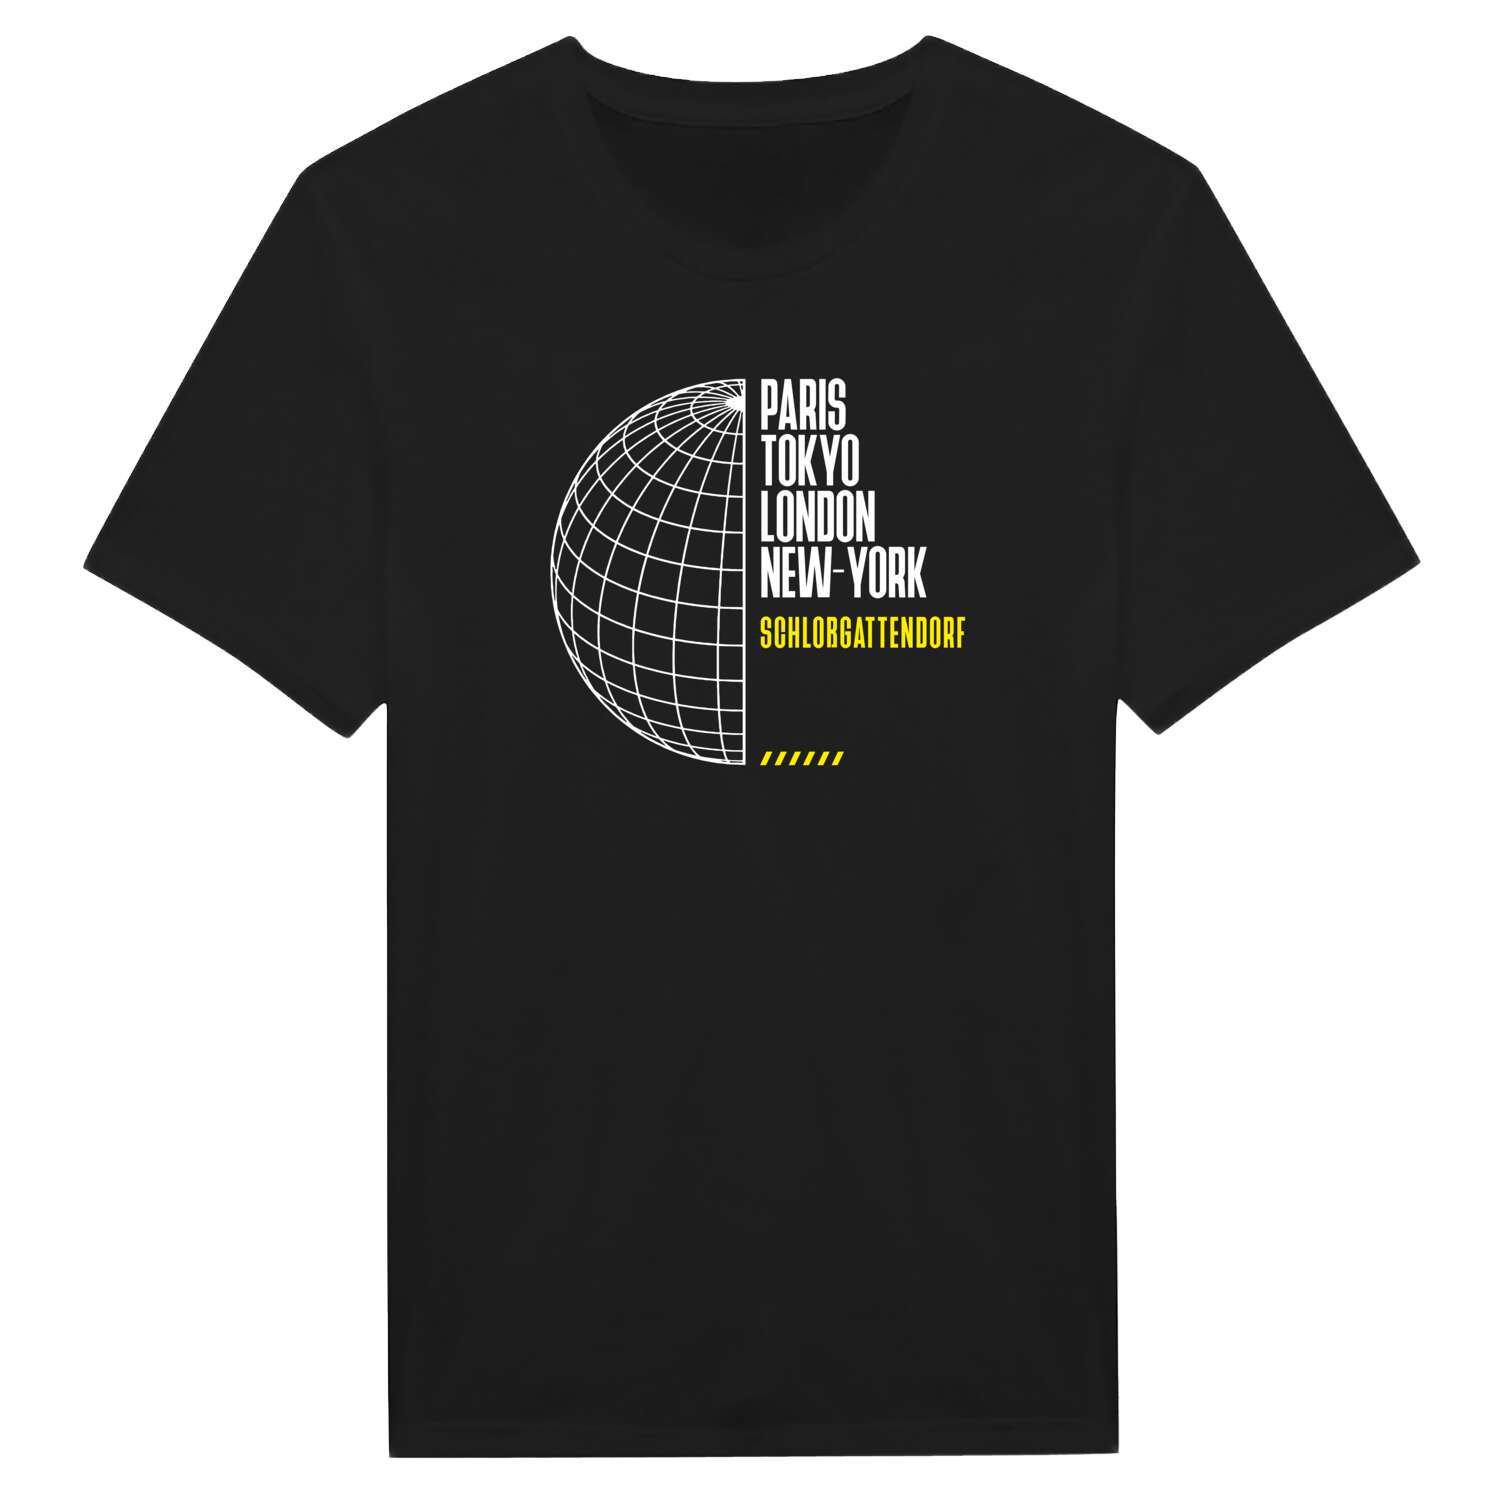 Schloßgattendorf T-Shirt »Paris Tokyo London«